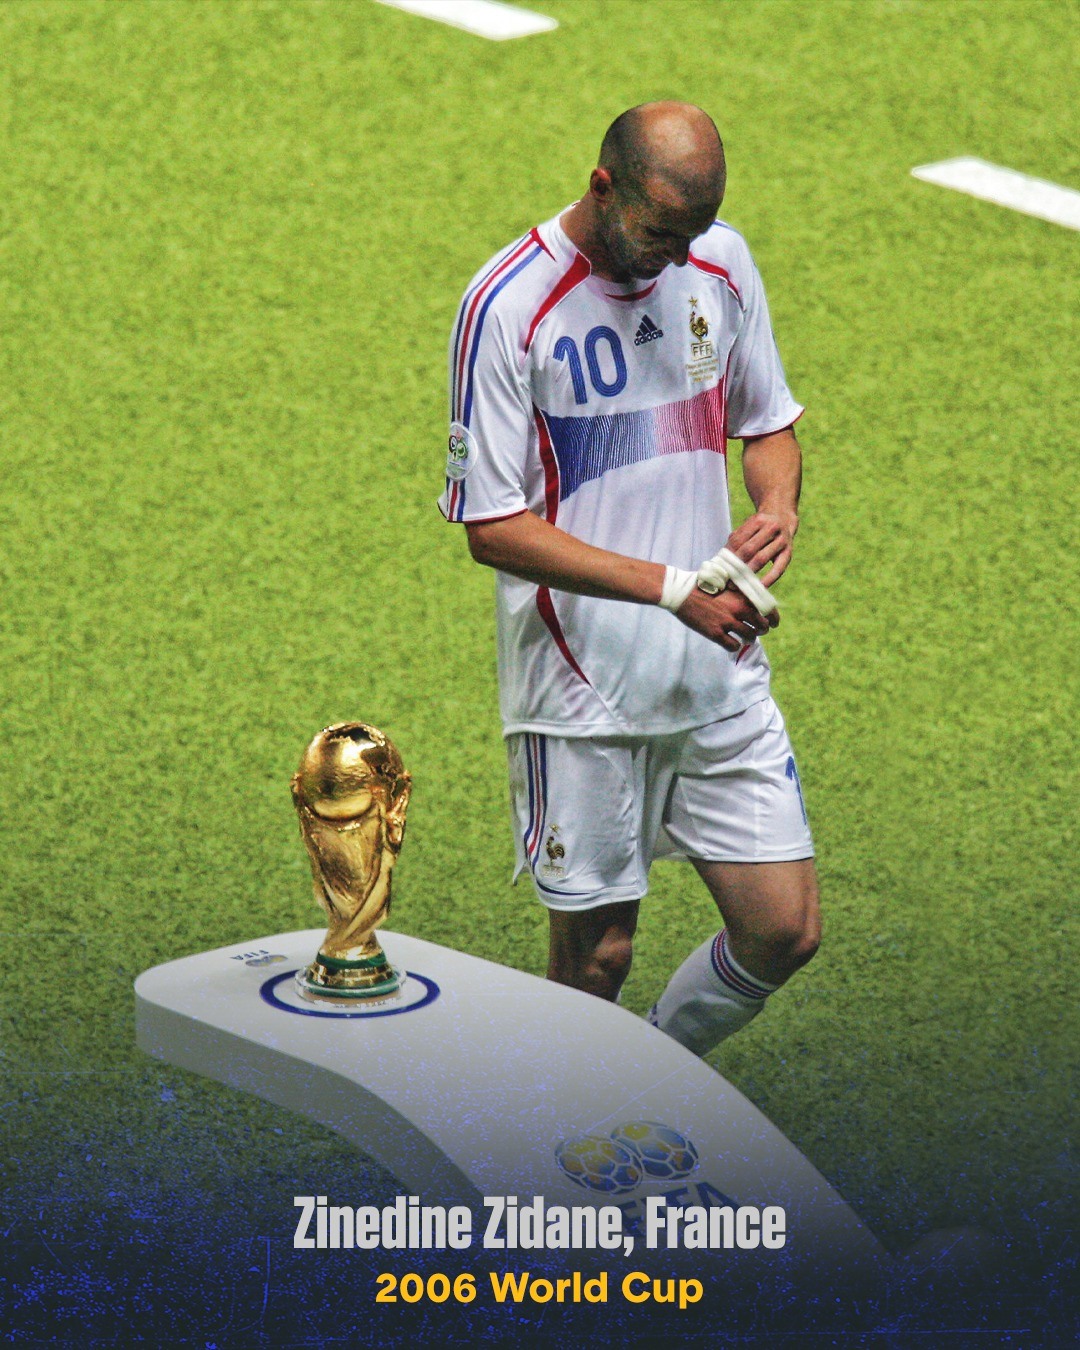 Tiền vệ tài hoa Zinedine Zidane cúi đầu đi qua chiếc cúp vàng, sau khi bị đuổi khỏi sân ở trận chung kết World Cup 2006. Trận này, Zidane ghi bàn từ chấm phạt đền giúp Pháp dẫn 1-0, nhưng sau đó bị gỡ hòa 1-1. Sang hiệp phụ, Zidane bị đuổi vì húc vào ngược Materazzi. Tuyển Pháp sau đó thua Italia 4-5 ở loạt luân lưu. Đây cũng là trận đấu cuối cùng của Zidane trong sự nghiệp.